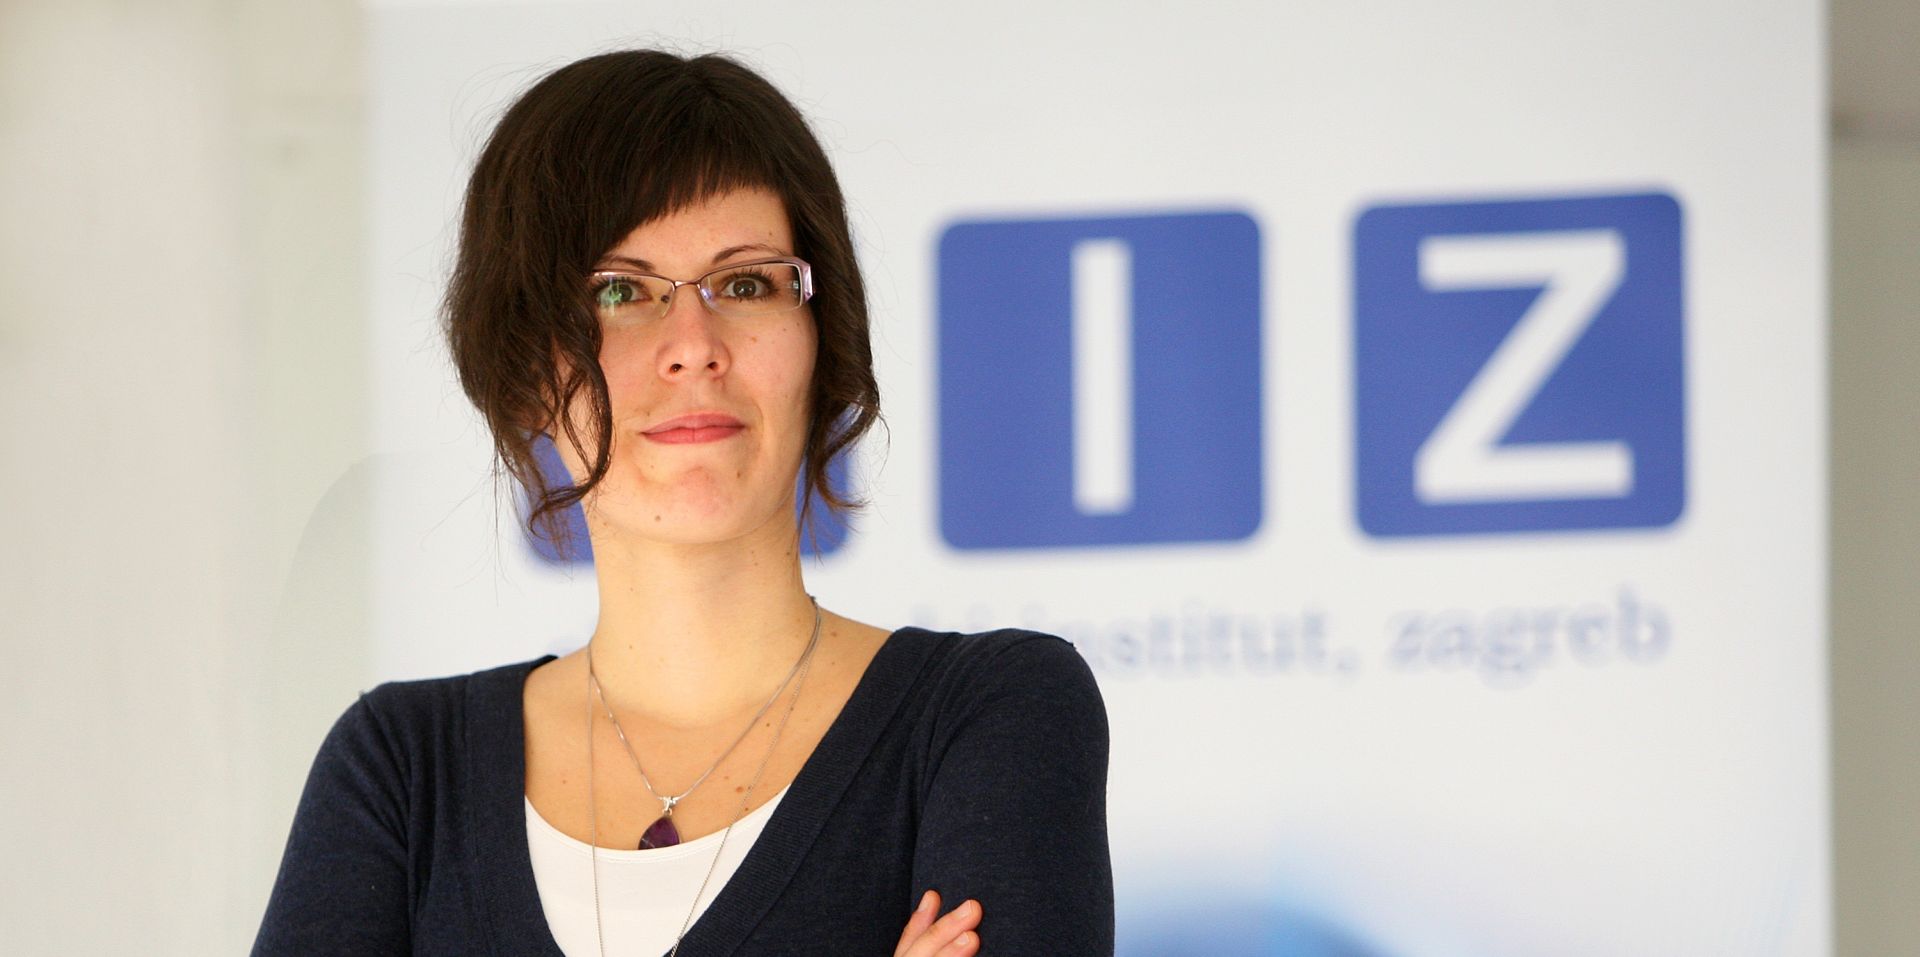 08.02.2012., Zagreb - Maruska Vizek, znanstvena suradnica na Ekonomskom institutu Zagreb.
Photo: Slavko Midzor/PIXSELL